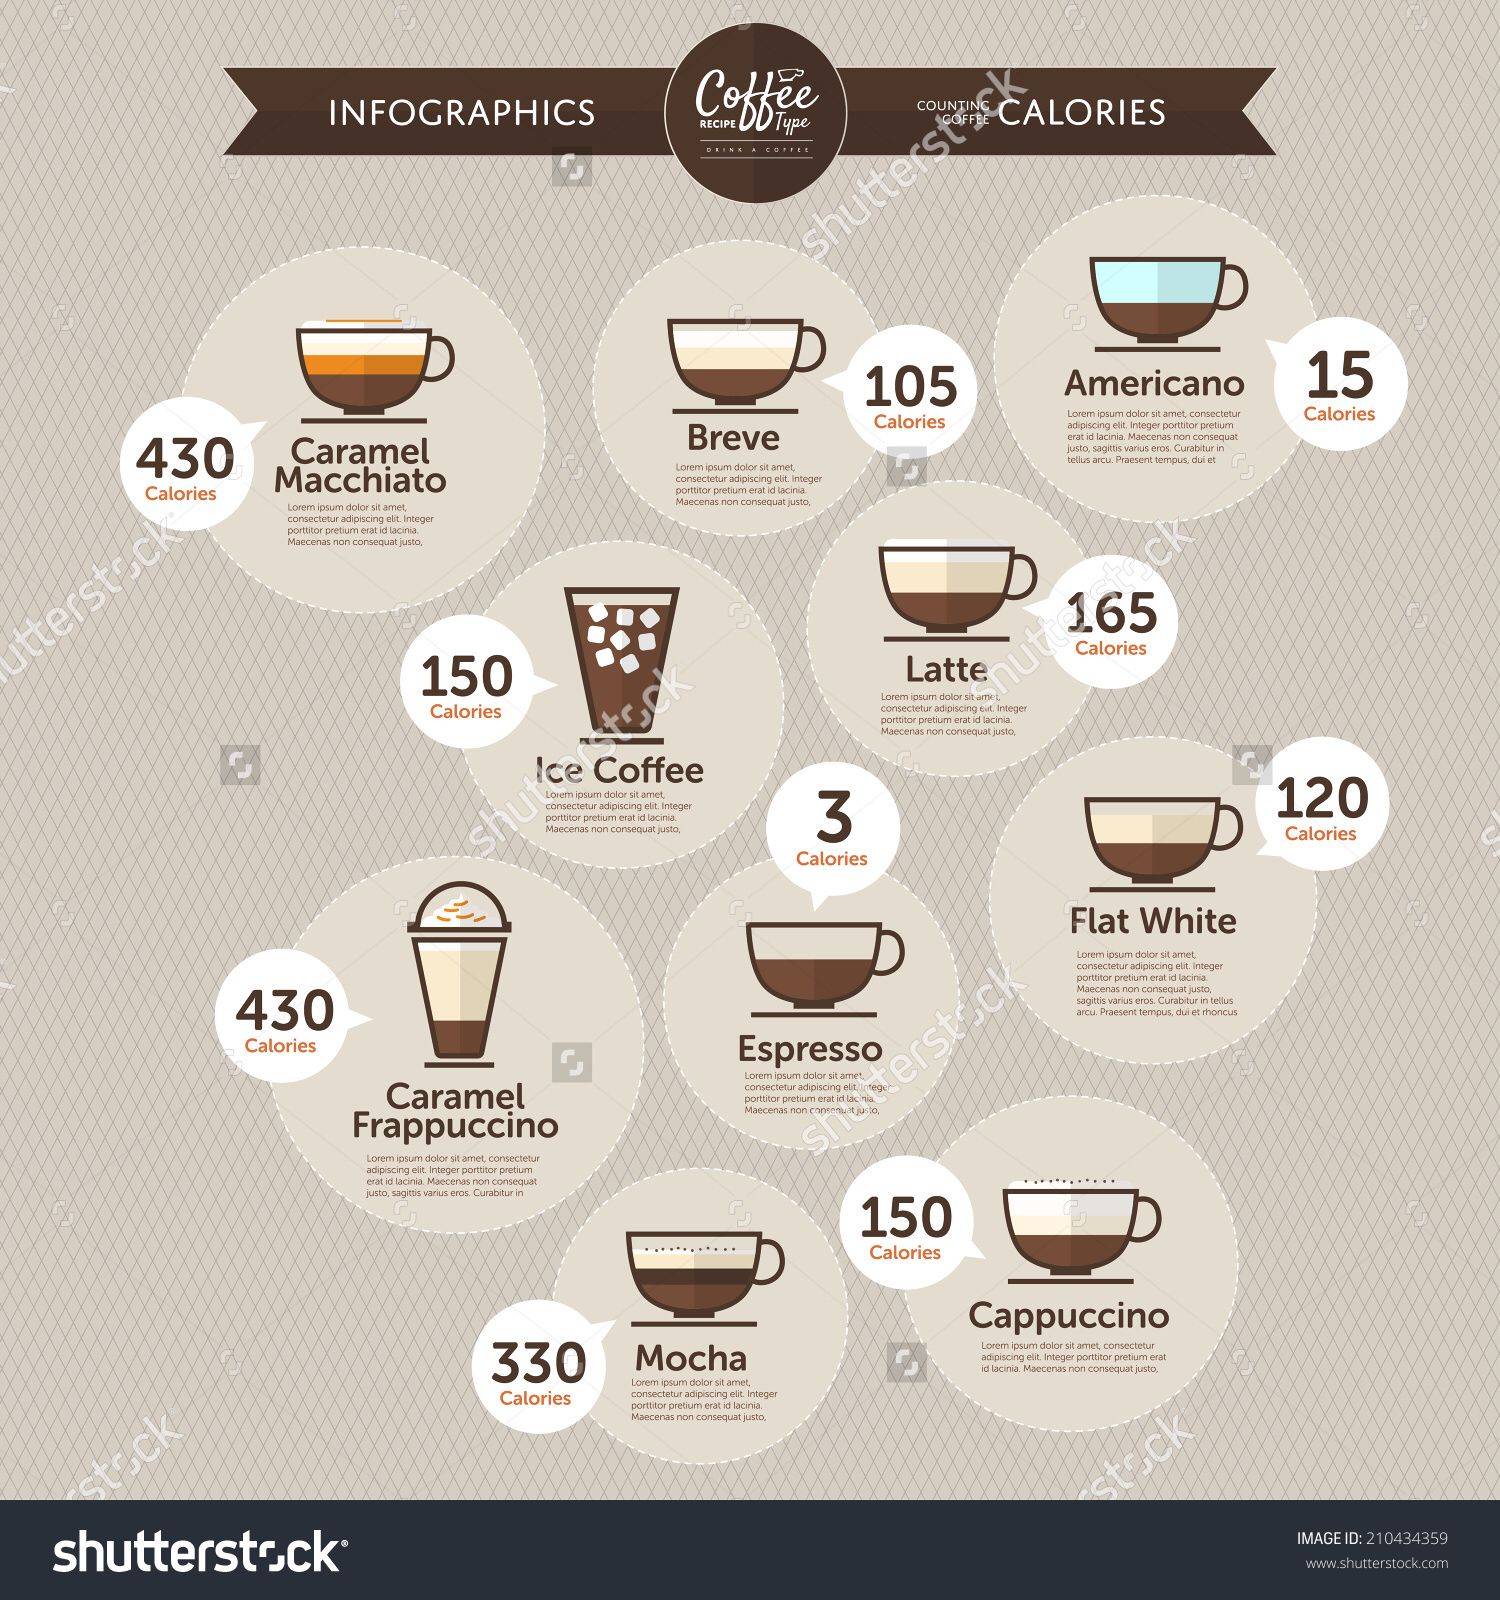 Кофе со сливками: калорийность